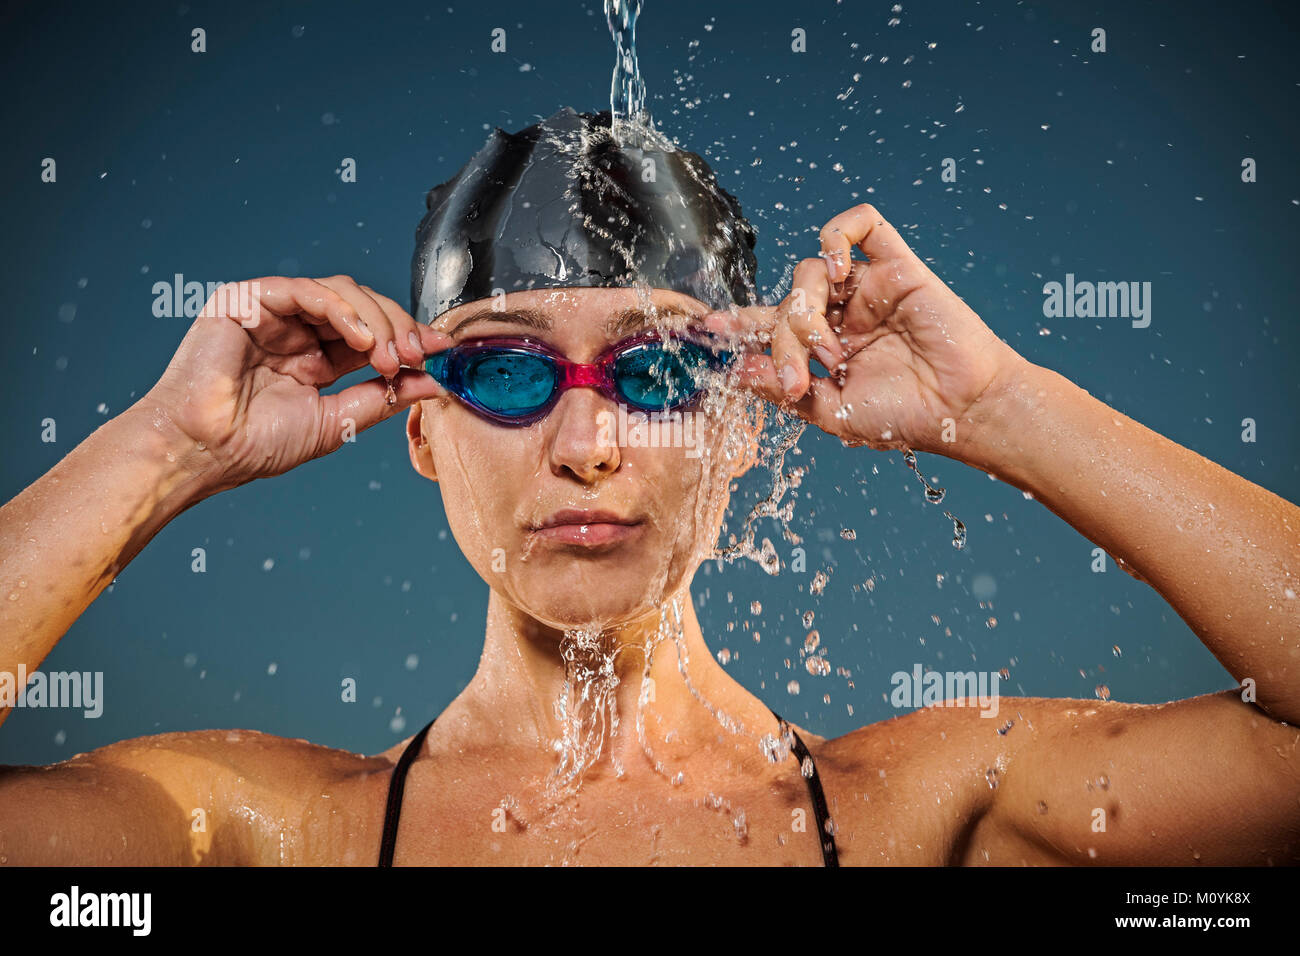 L'acqua spruzzata sulla donna caucasica regolando gli occhiali per nuoto Foto Stock